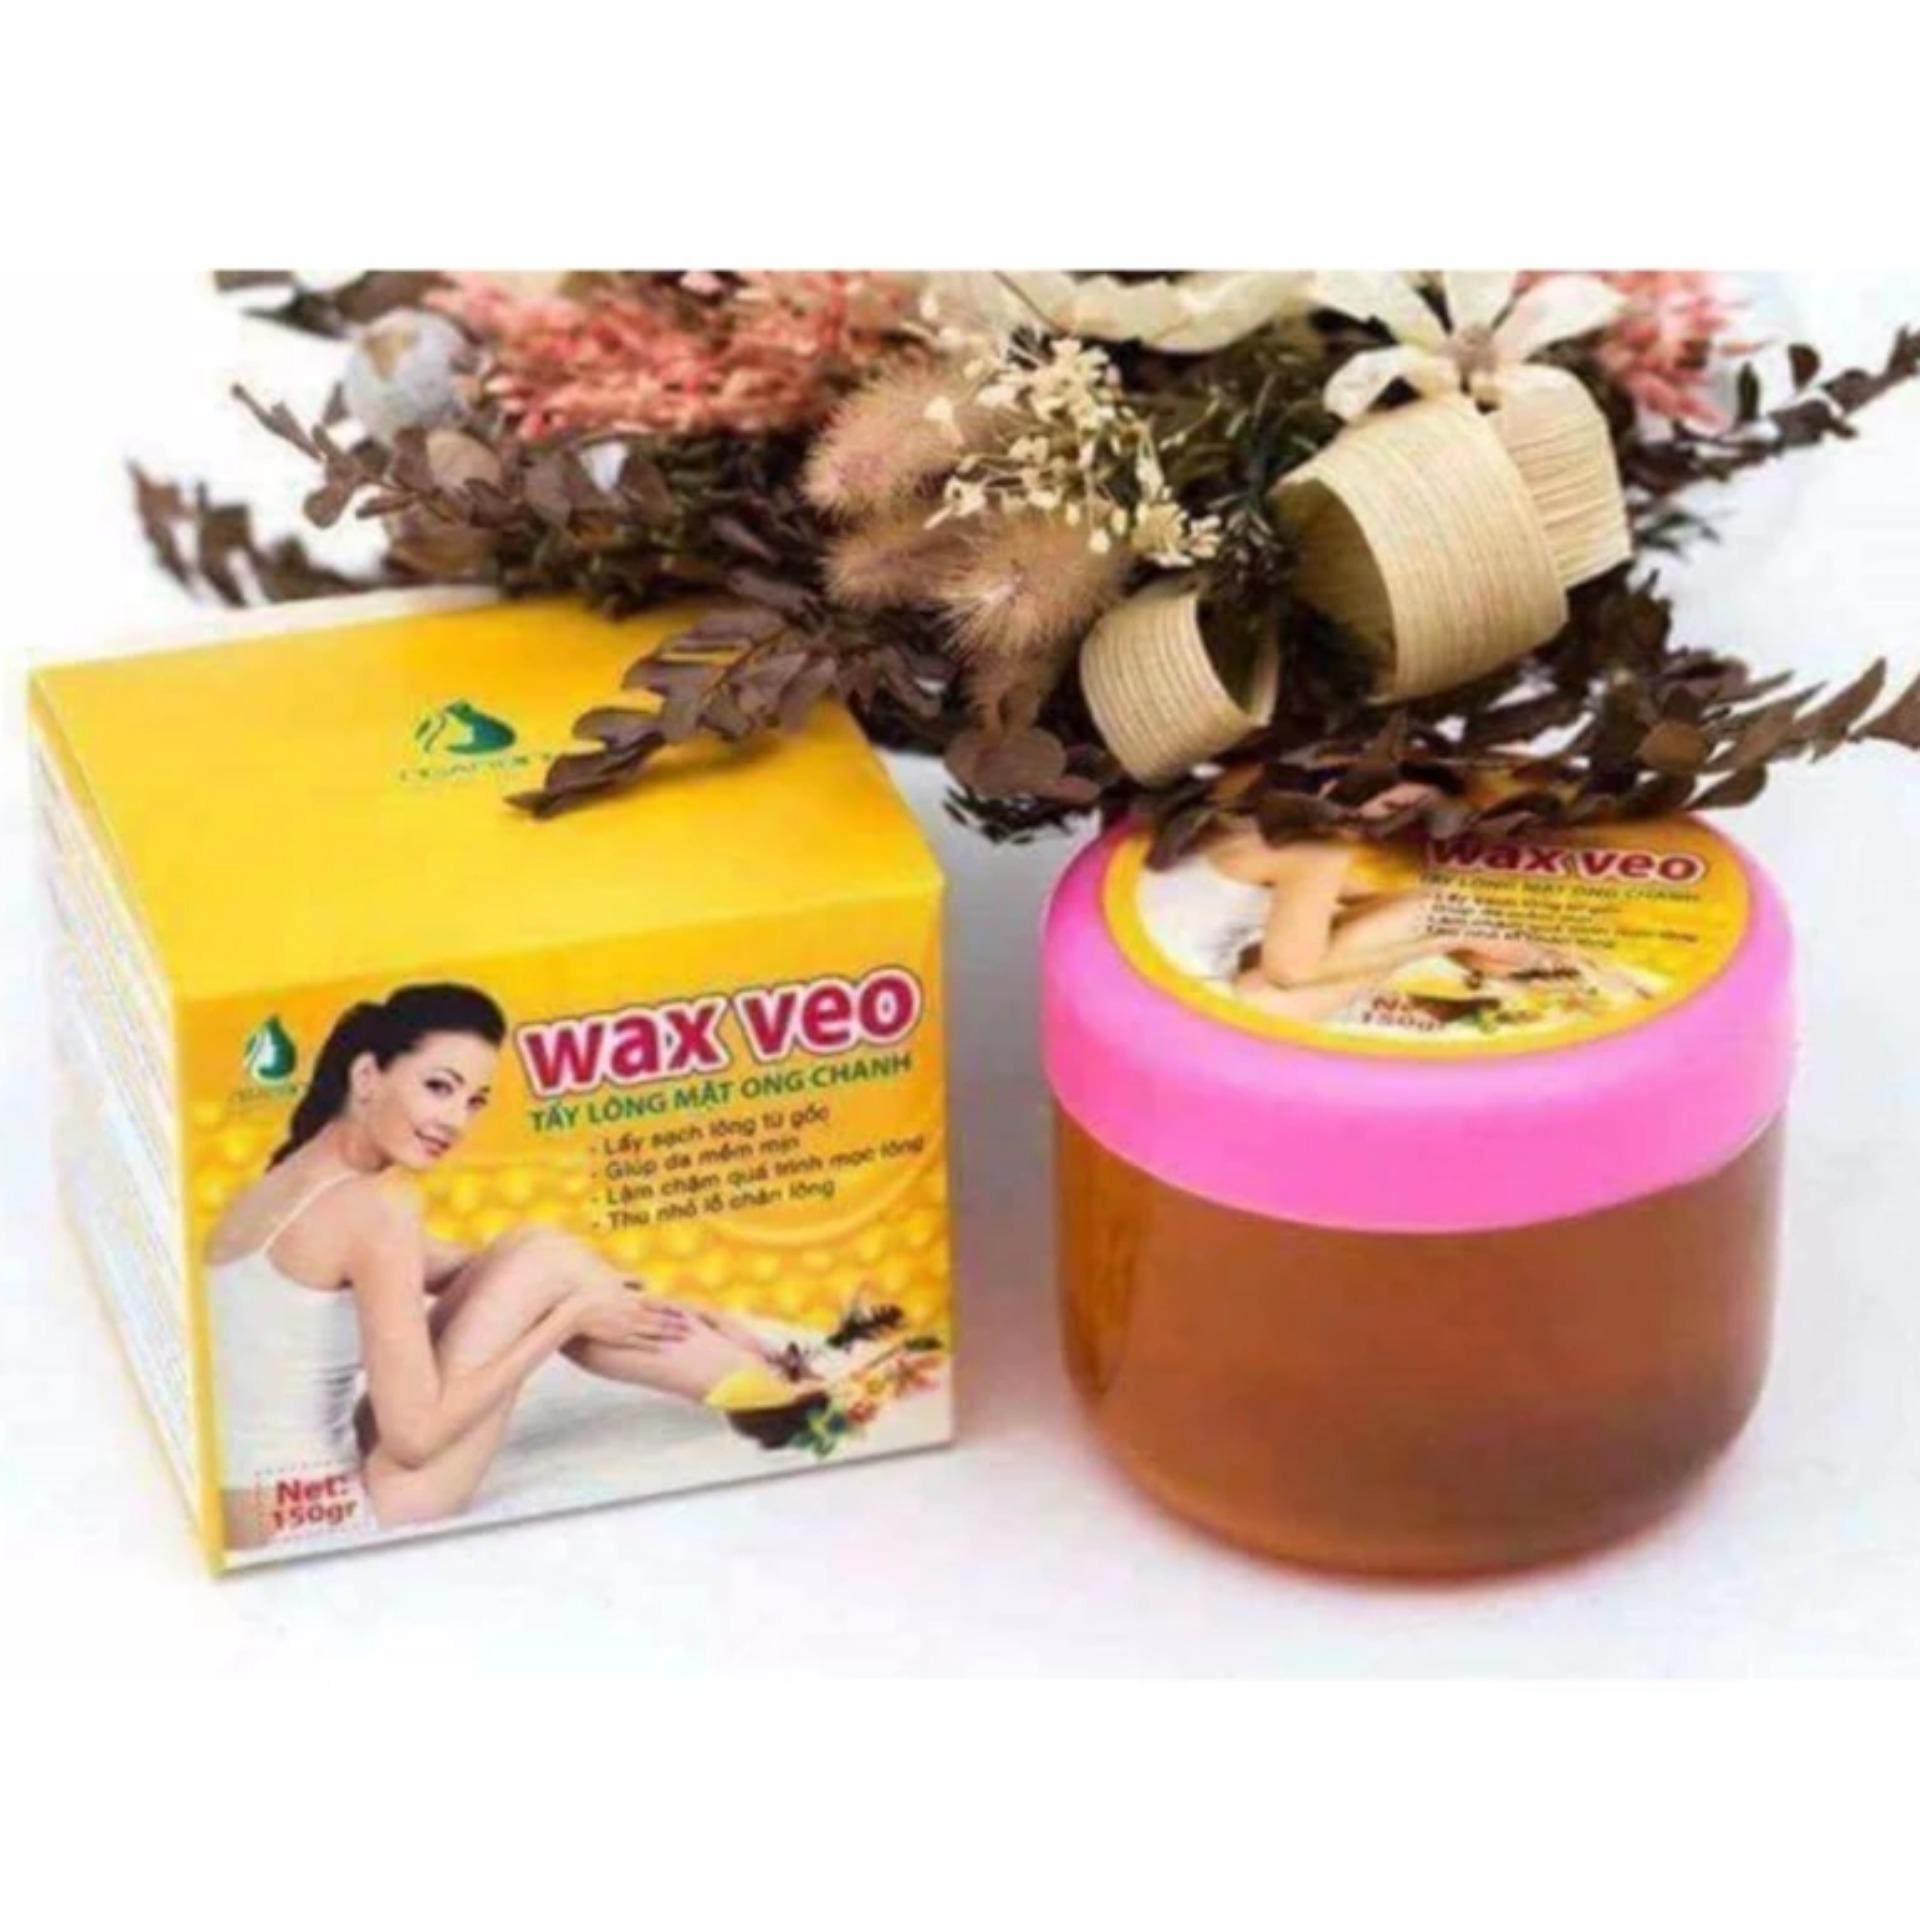 Wax Veo triệt lông mật ong chanh 100% thiên nhiên